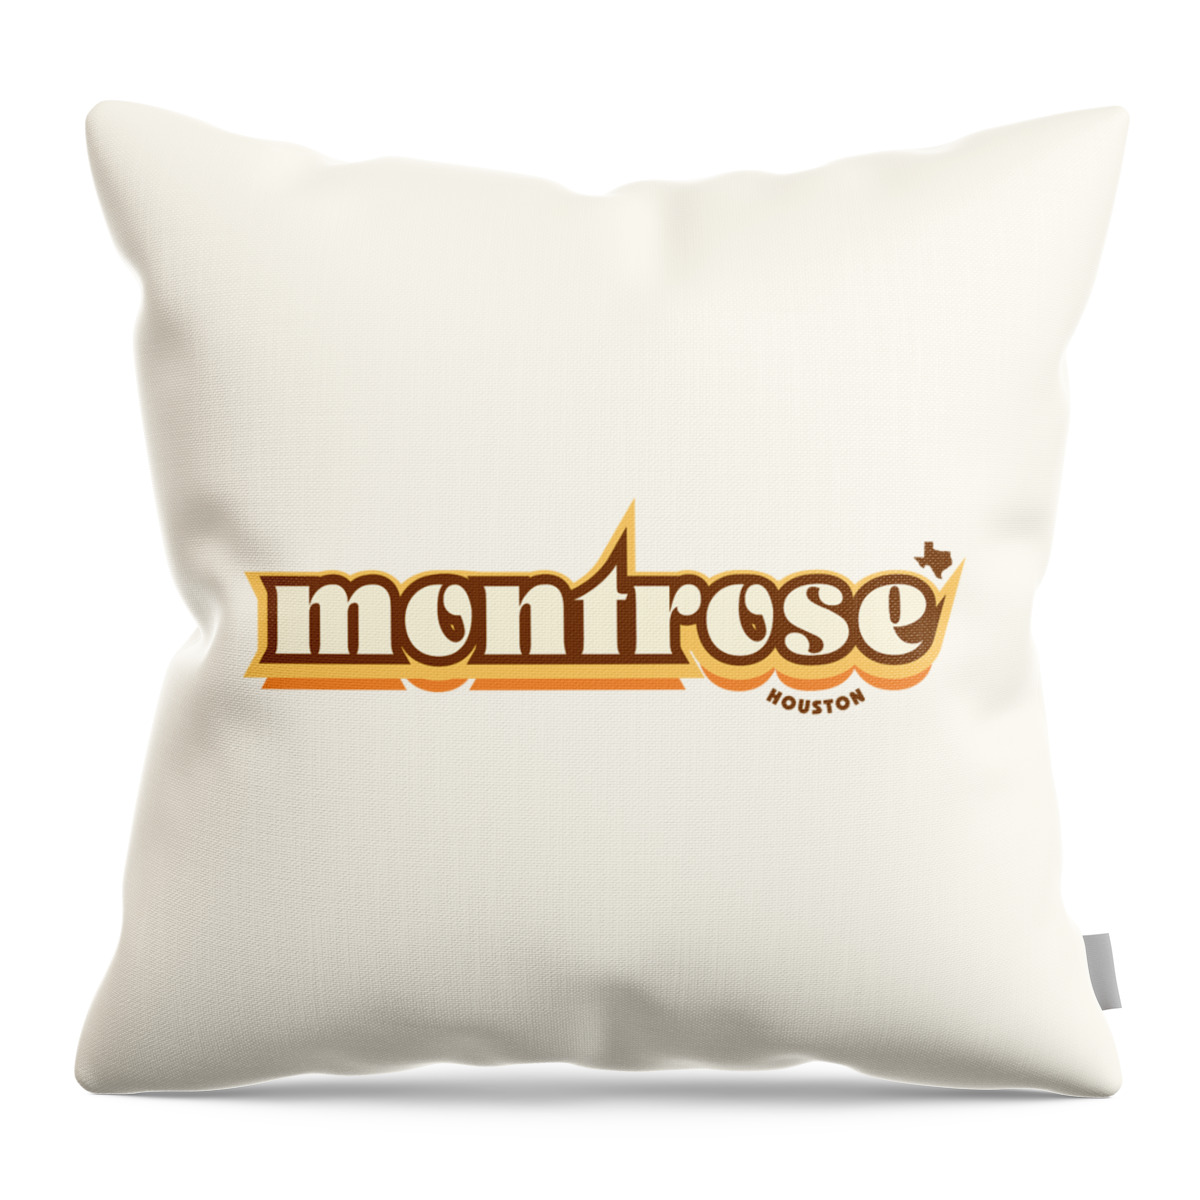 Jan M Stephenson Designs Throw Pillow featuring the digital art Montrose Houston Texas - Retro Name Design, Southeast Texas, Yellow, Brown, Orange by Jan M Stephenson